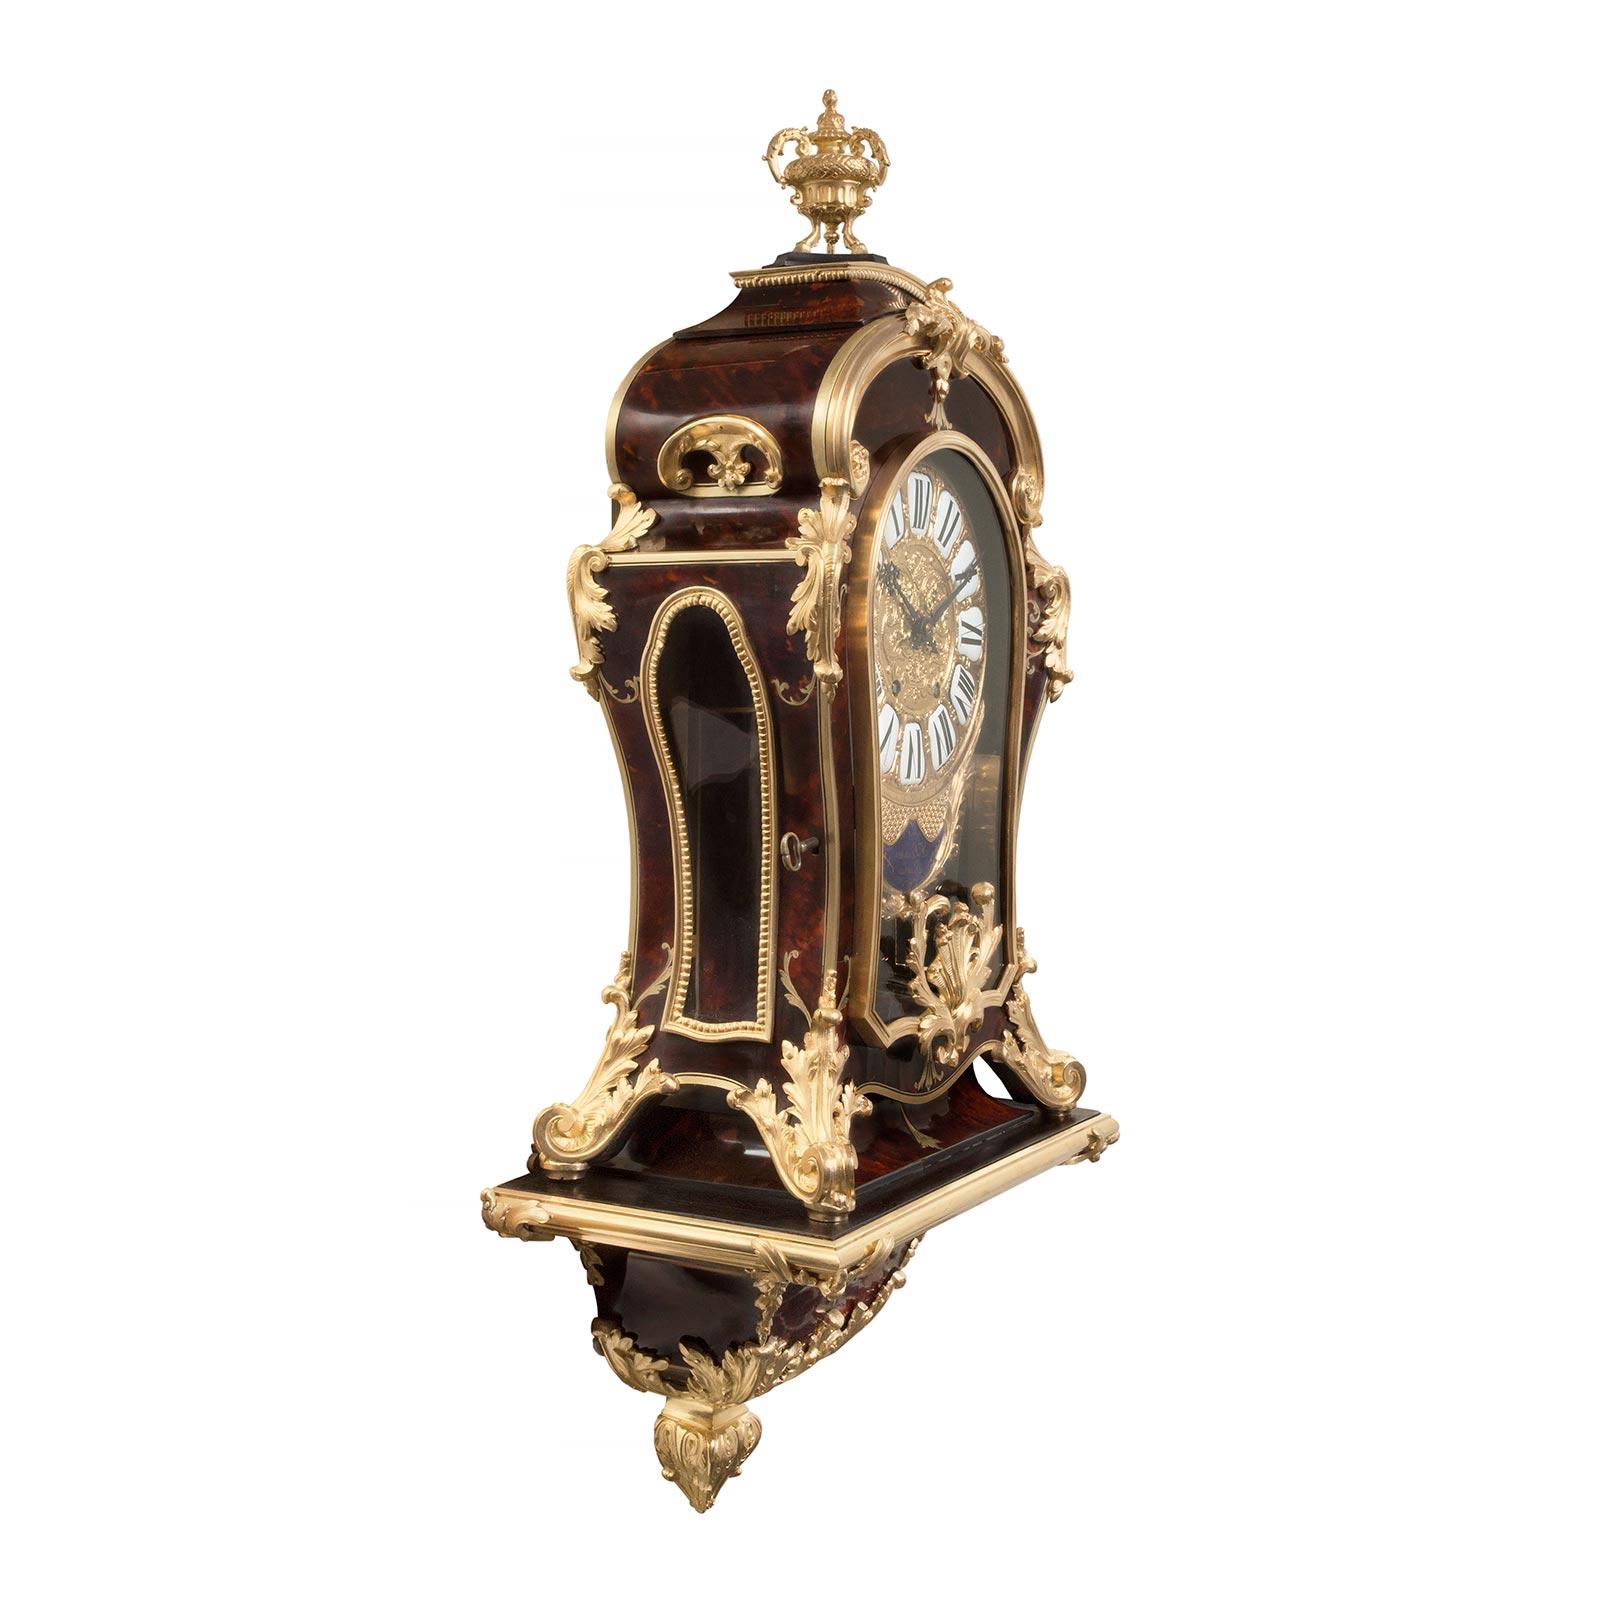 Eine atemberaubende Französisch 19. Jahrhundert Louis XIV st. Schildpatt, Messing und Ormolu Cartel Uhr unterzeichnet F.Lesage Paris. Die schöne Uhr steht auf ihrem originalen Trägerregal, das von einem reich ziselierten Ormolu-Foliendekor unter